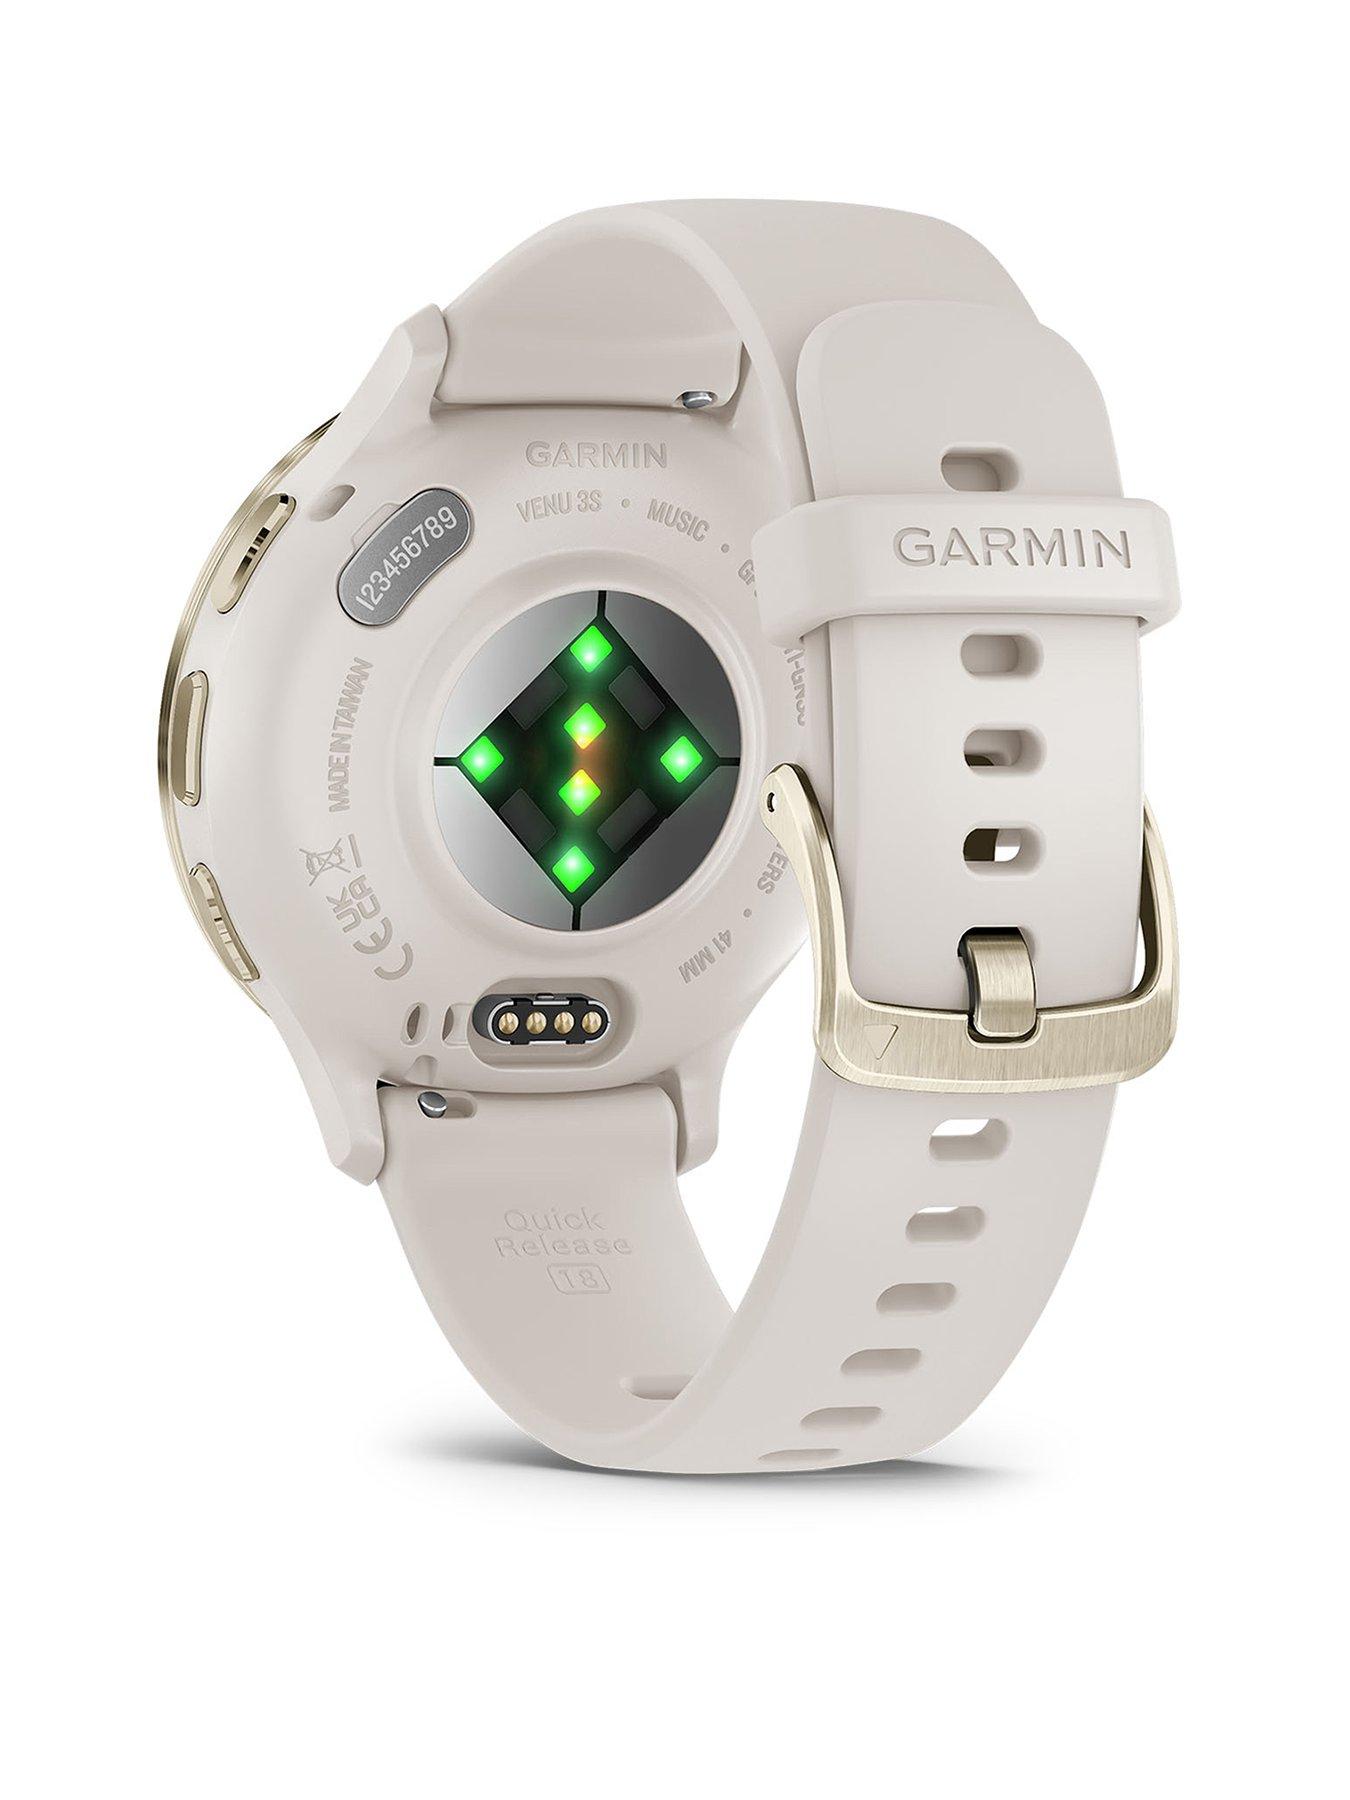 Garmin Venu 3 In-Depth Review: More Sleep Analytics, Power Meters, and  More!